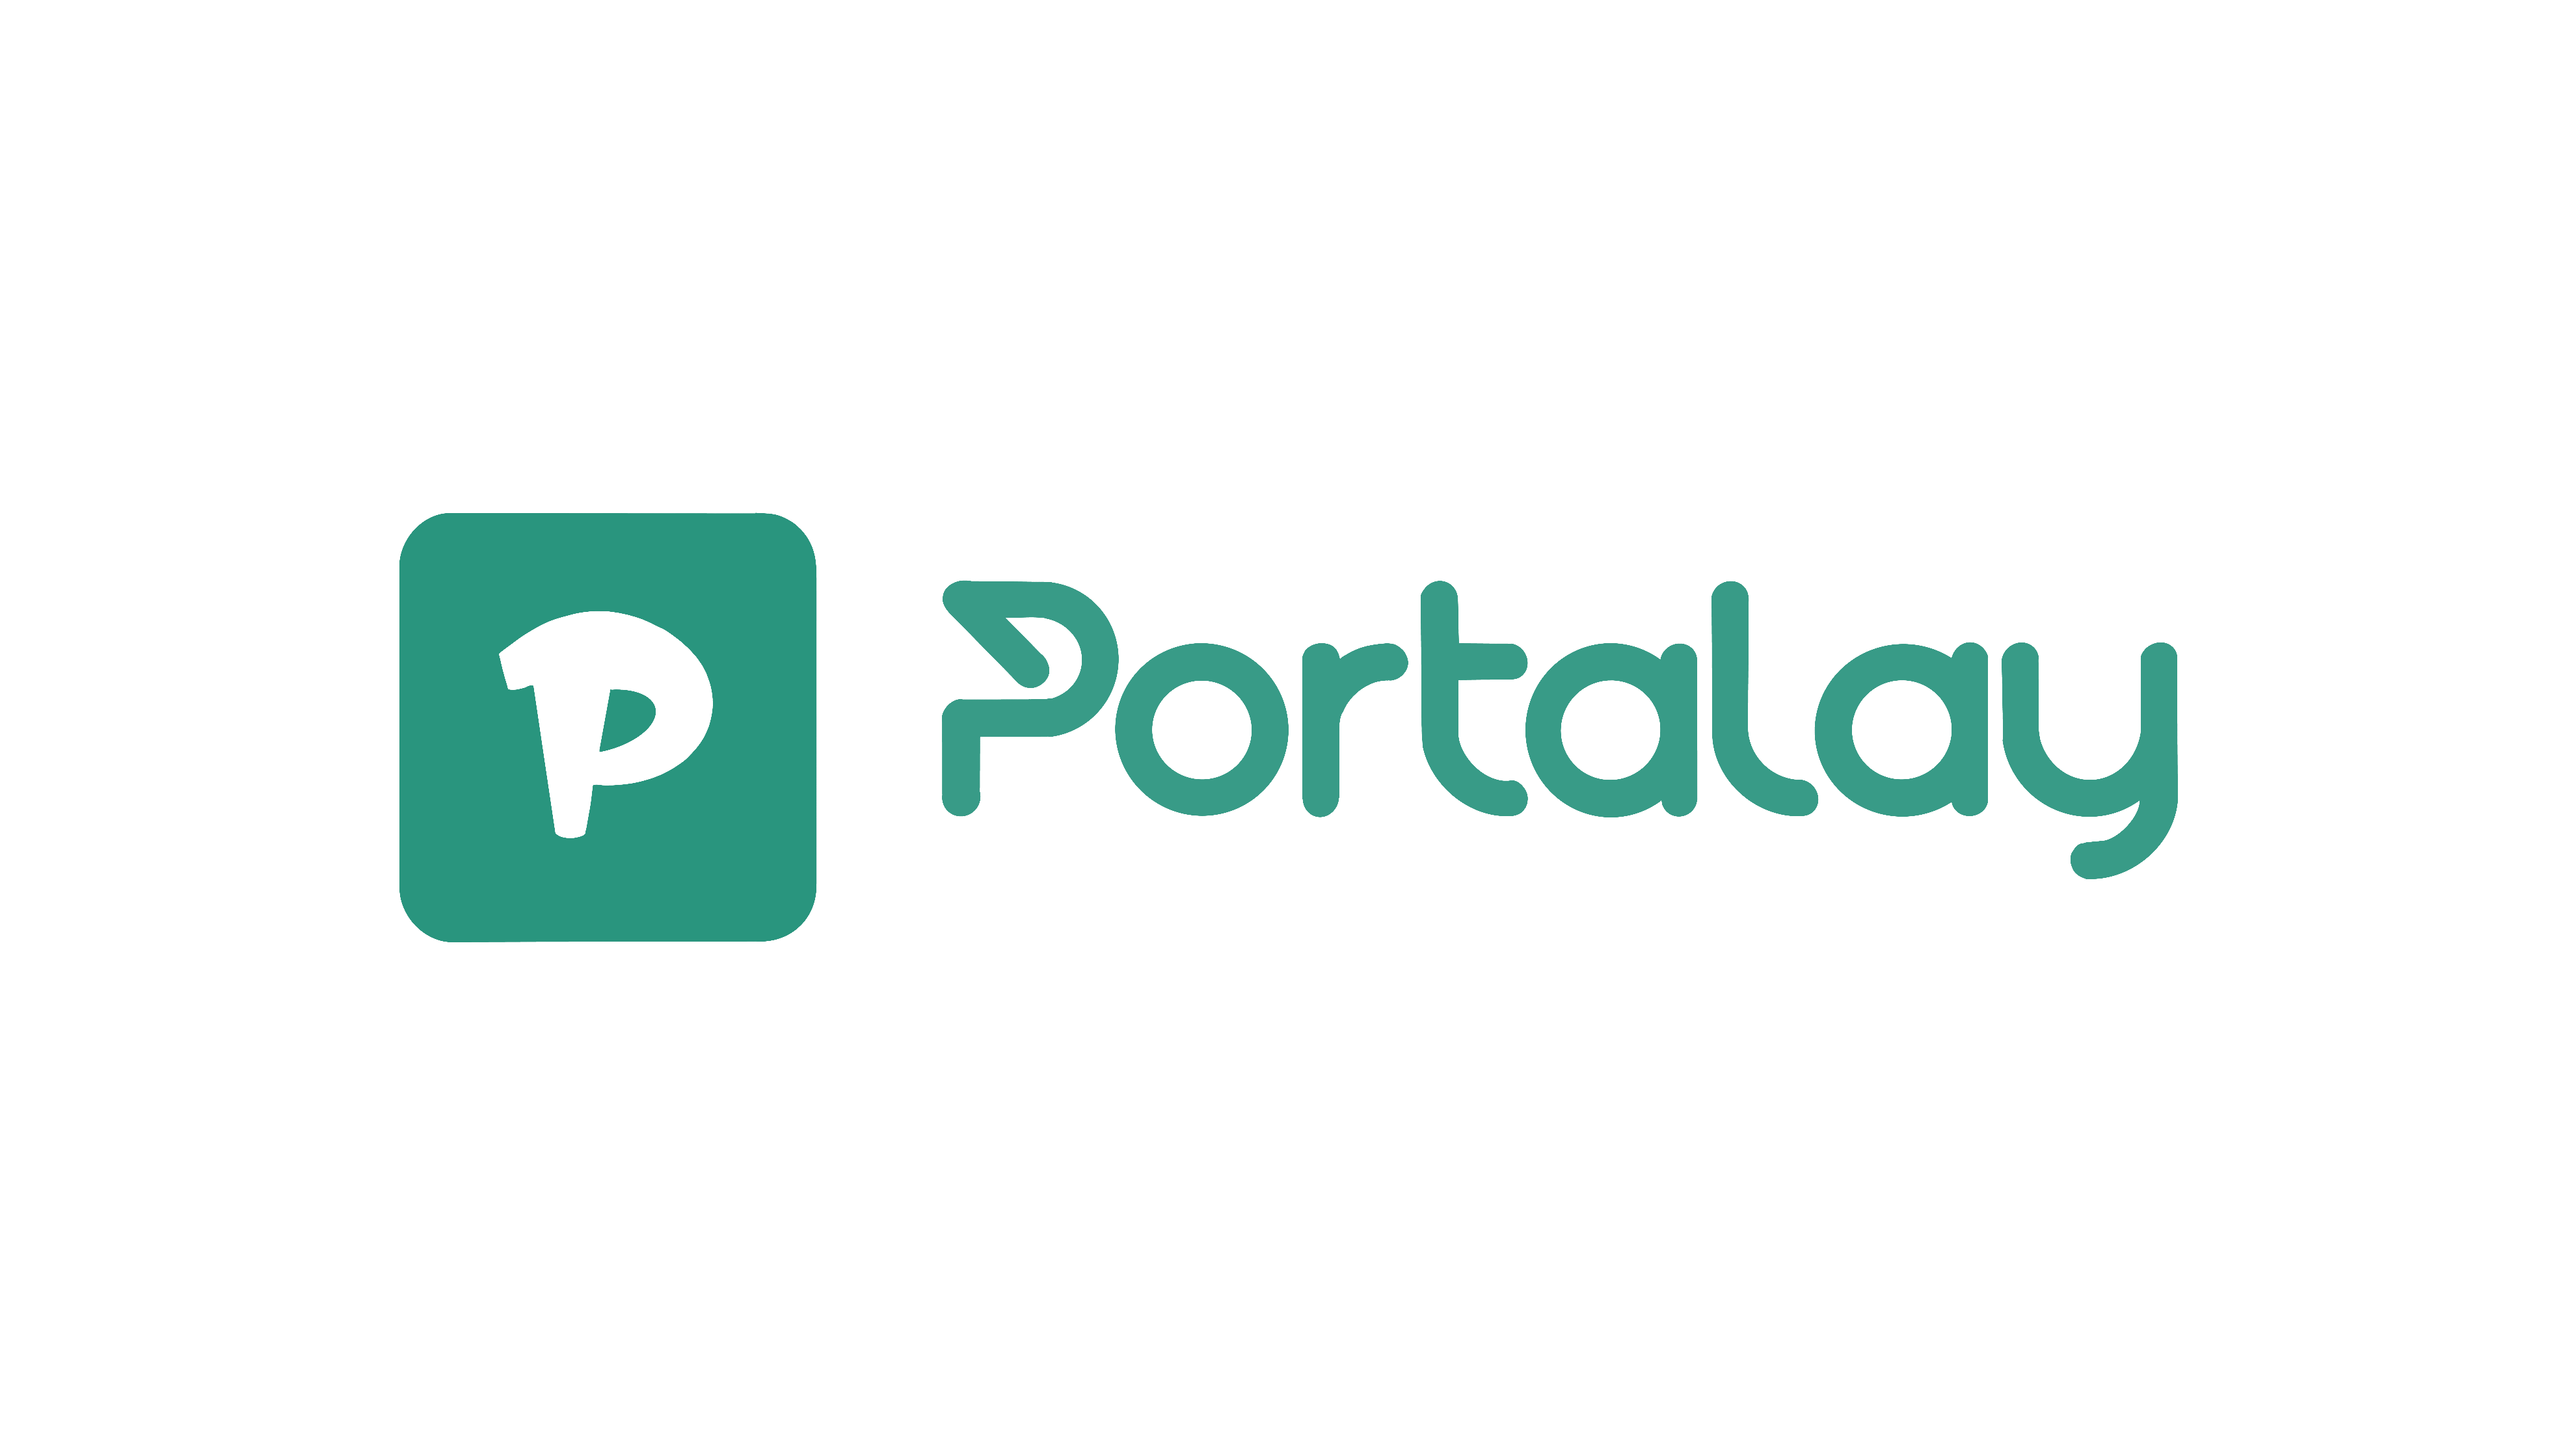 Portalay